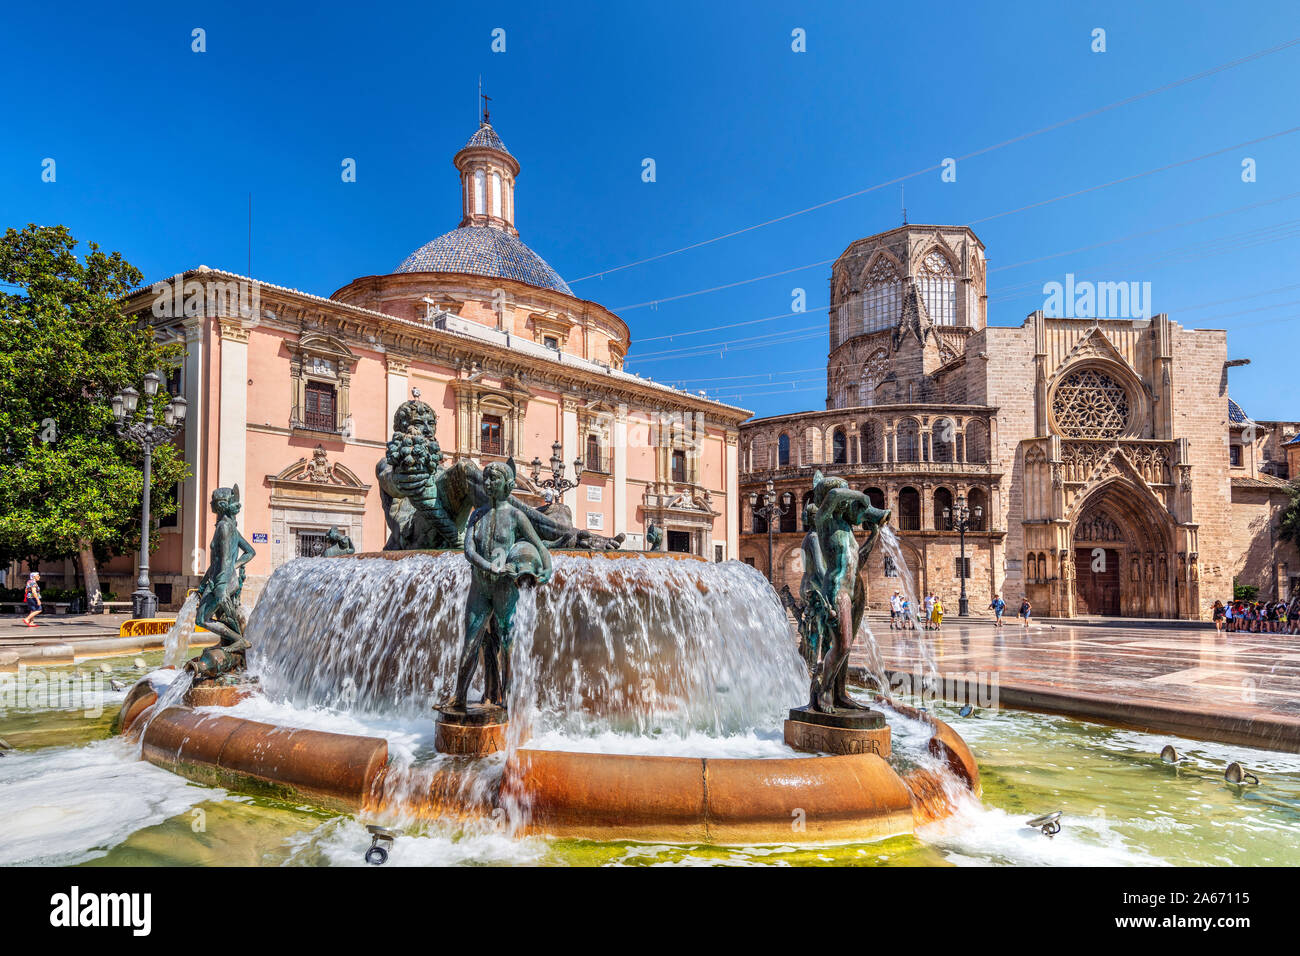 Plaza de la Virgen, Valencia, Comunidad Valenciana, Spain Stock Photo